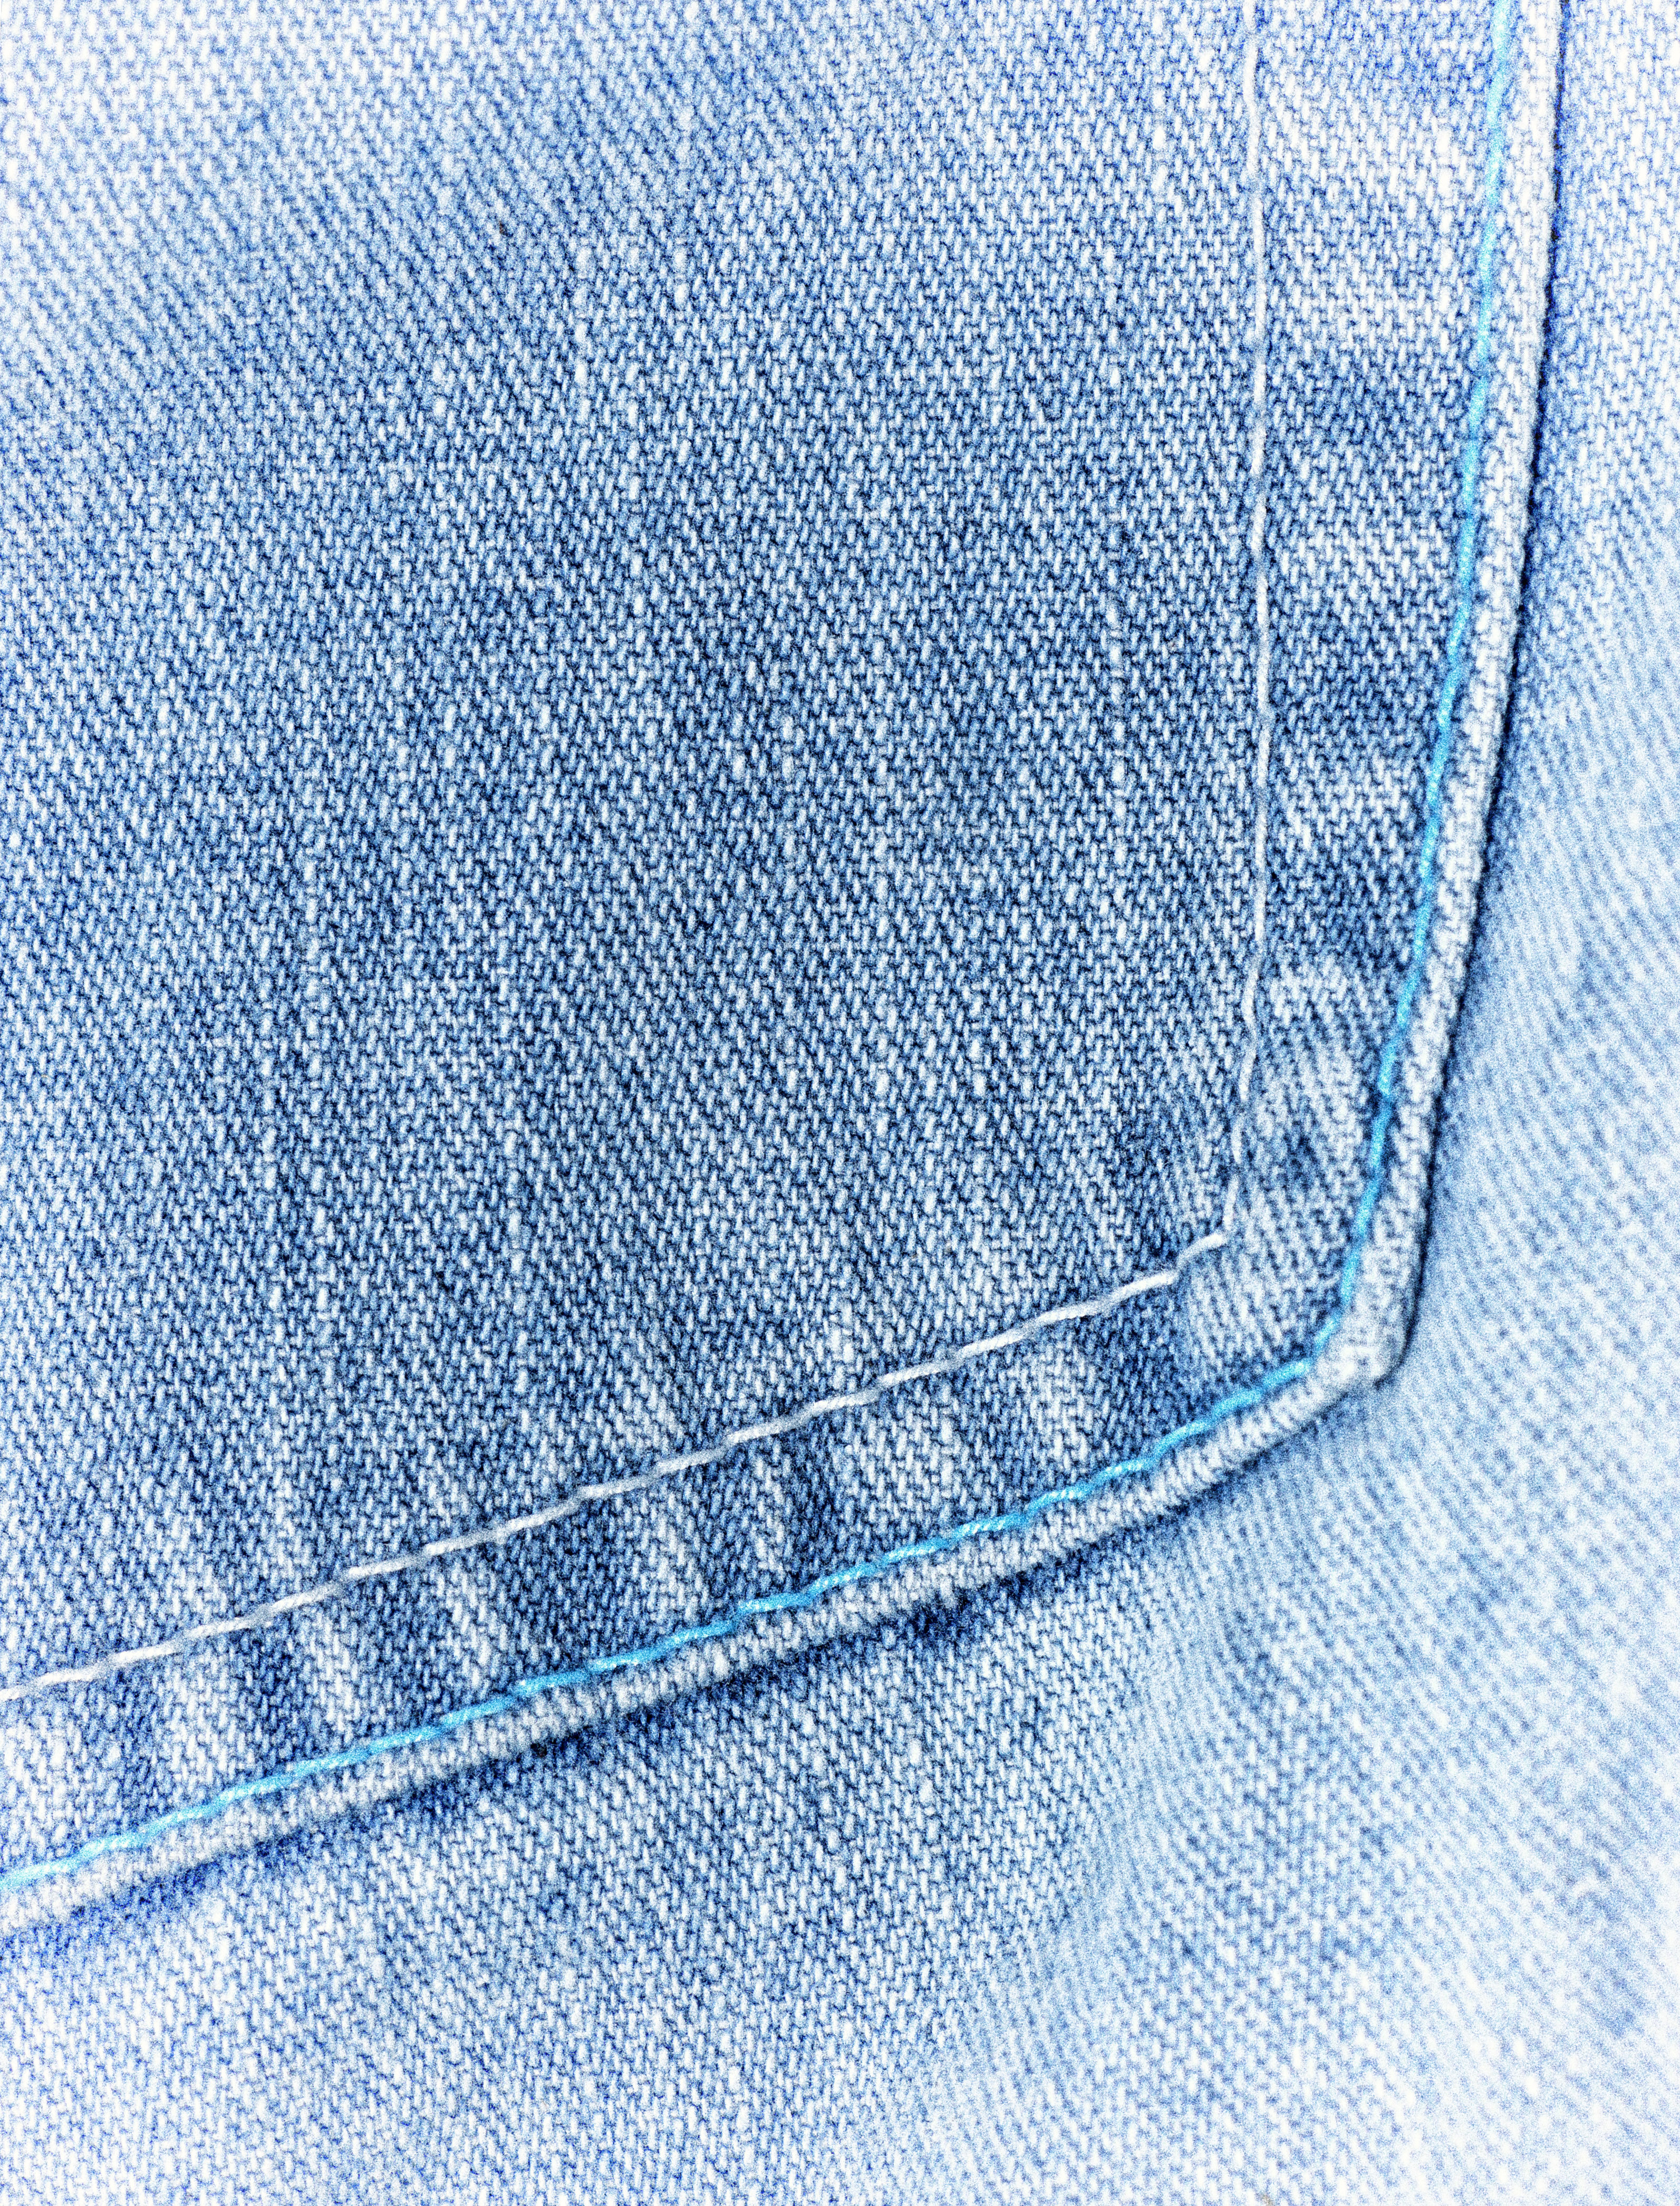 Карман джинсов рисунок. Джинсовый материал. Джинсы ткань. Джинса ткань. Джинсы текстура.